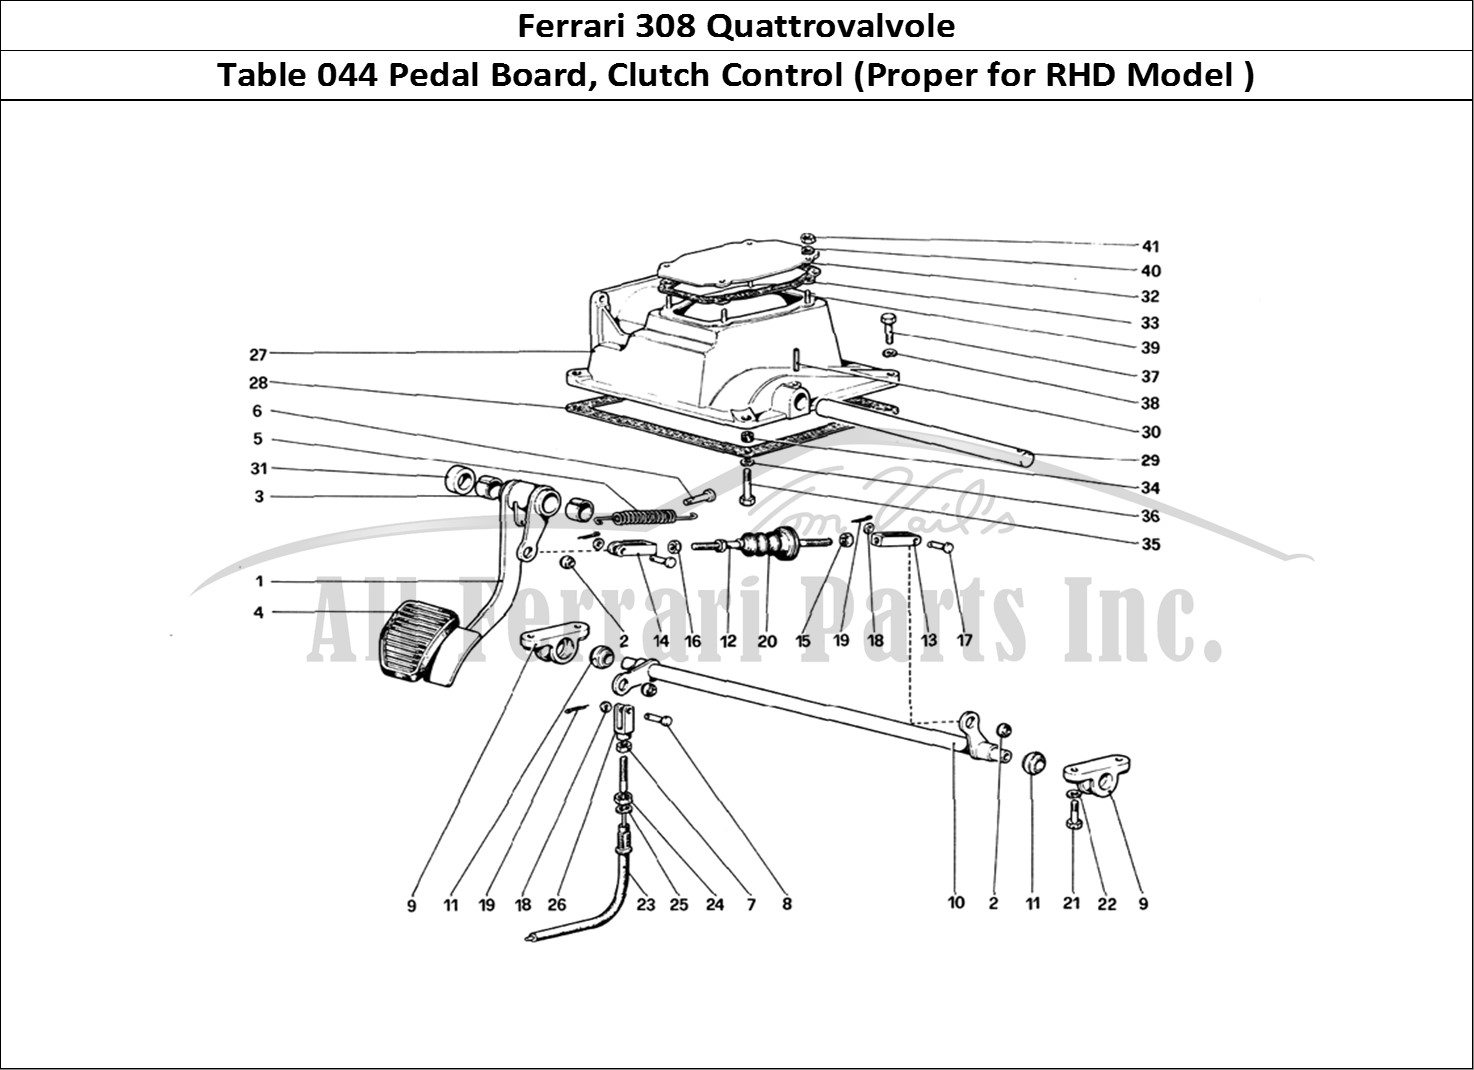 Ferrari Parts Ferrari 308 Quattrovalvole (1985) Page 044 Pedal Board - Clutch Cont